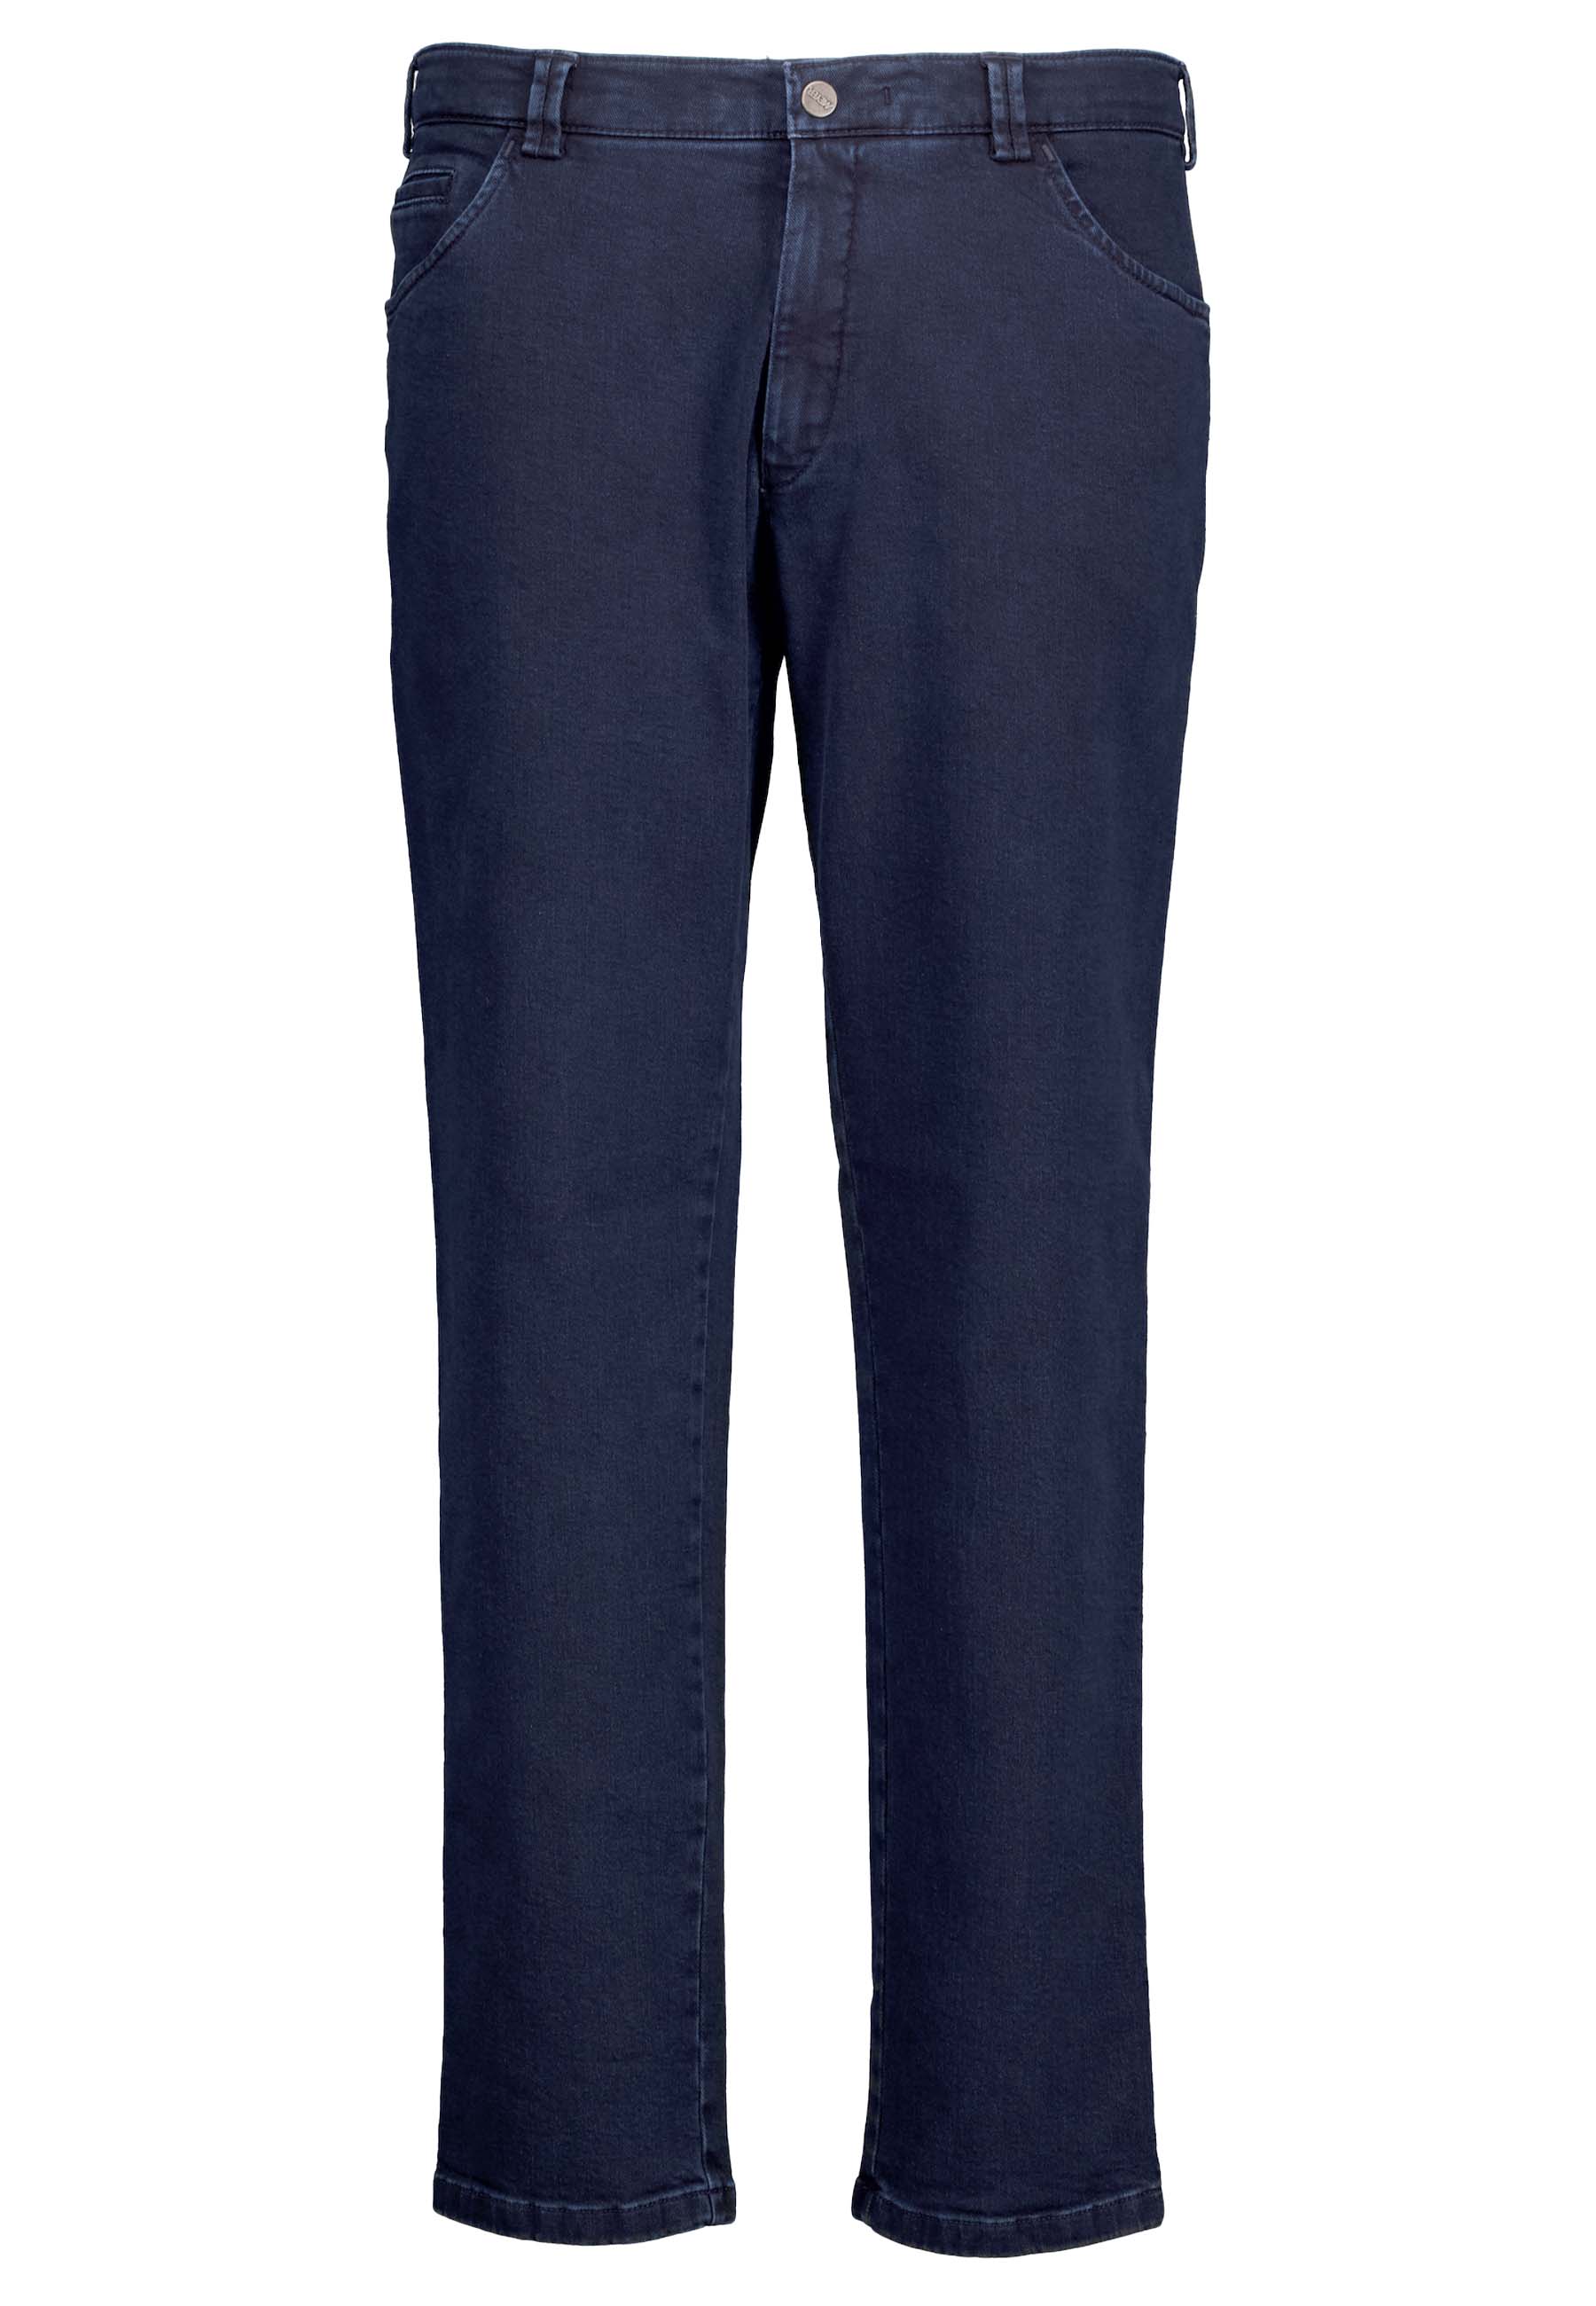 Meyer - Dublin Jeans Navy - Heren - Maat 24 - Slim-fit